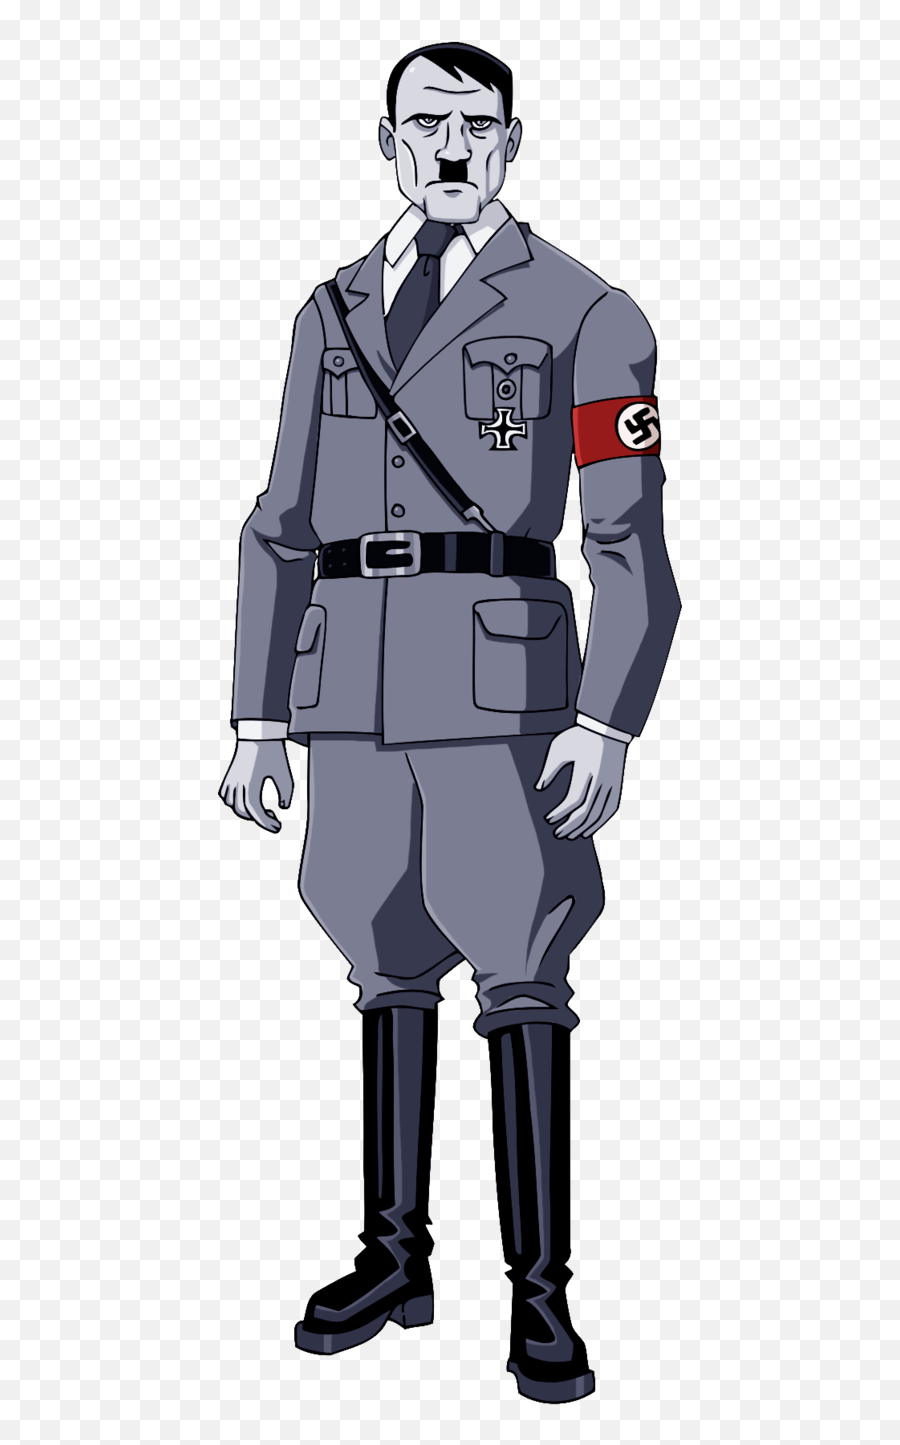 Adolf Hitler Png Images Free Download - Hitler Full Body,Adolf Hitler Png